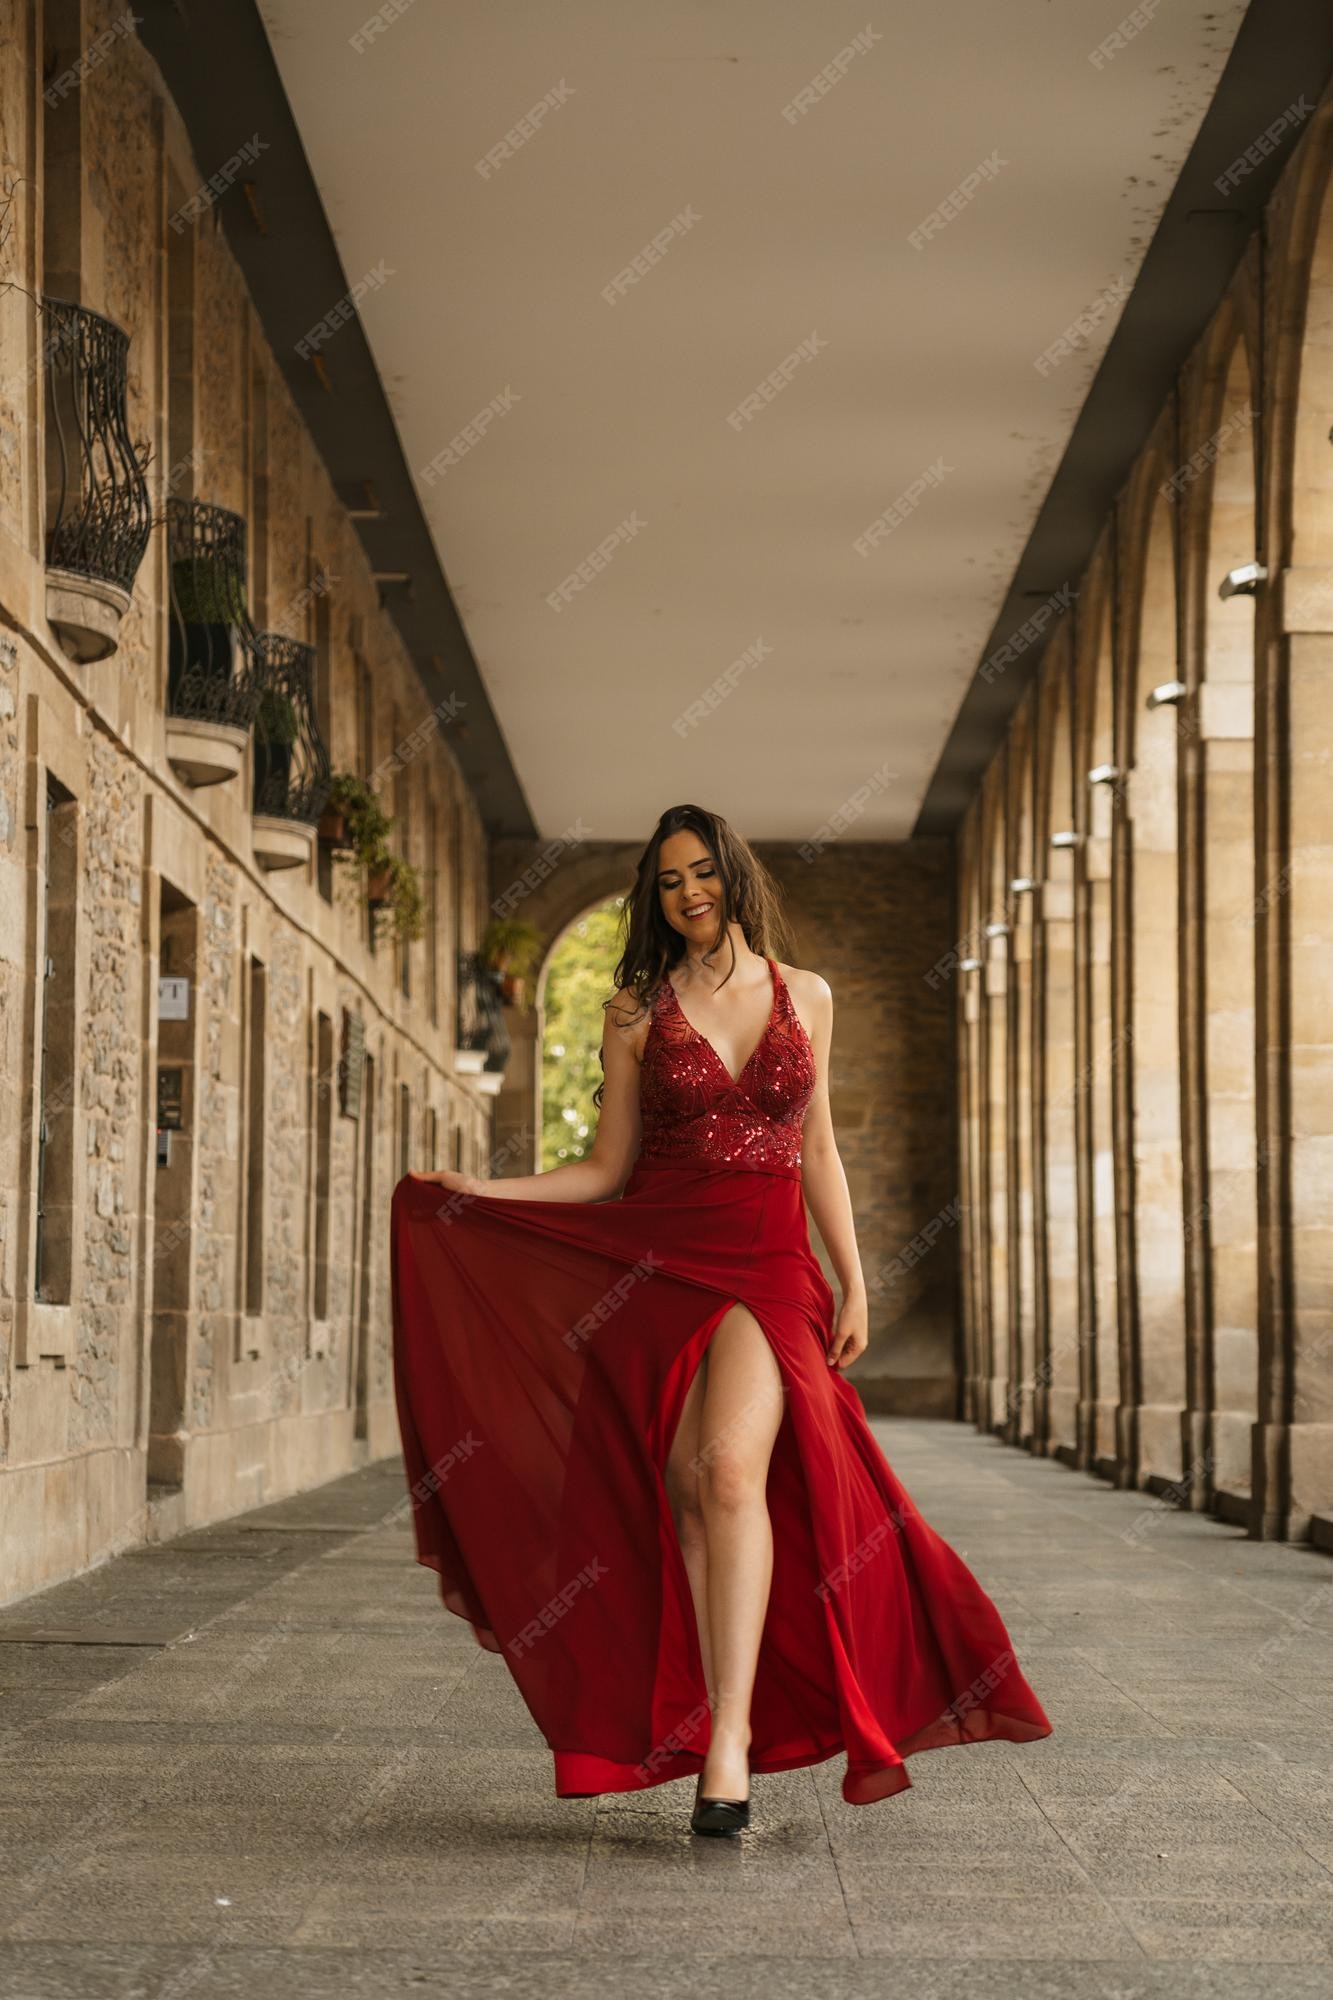 módulo paso Pickering Mujer caucásica en un vestido de gala rojo modelo sonriendo caminando hacia  la cámara | Foto Premium